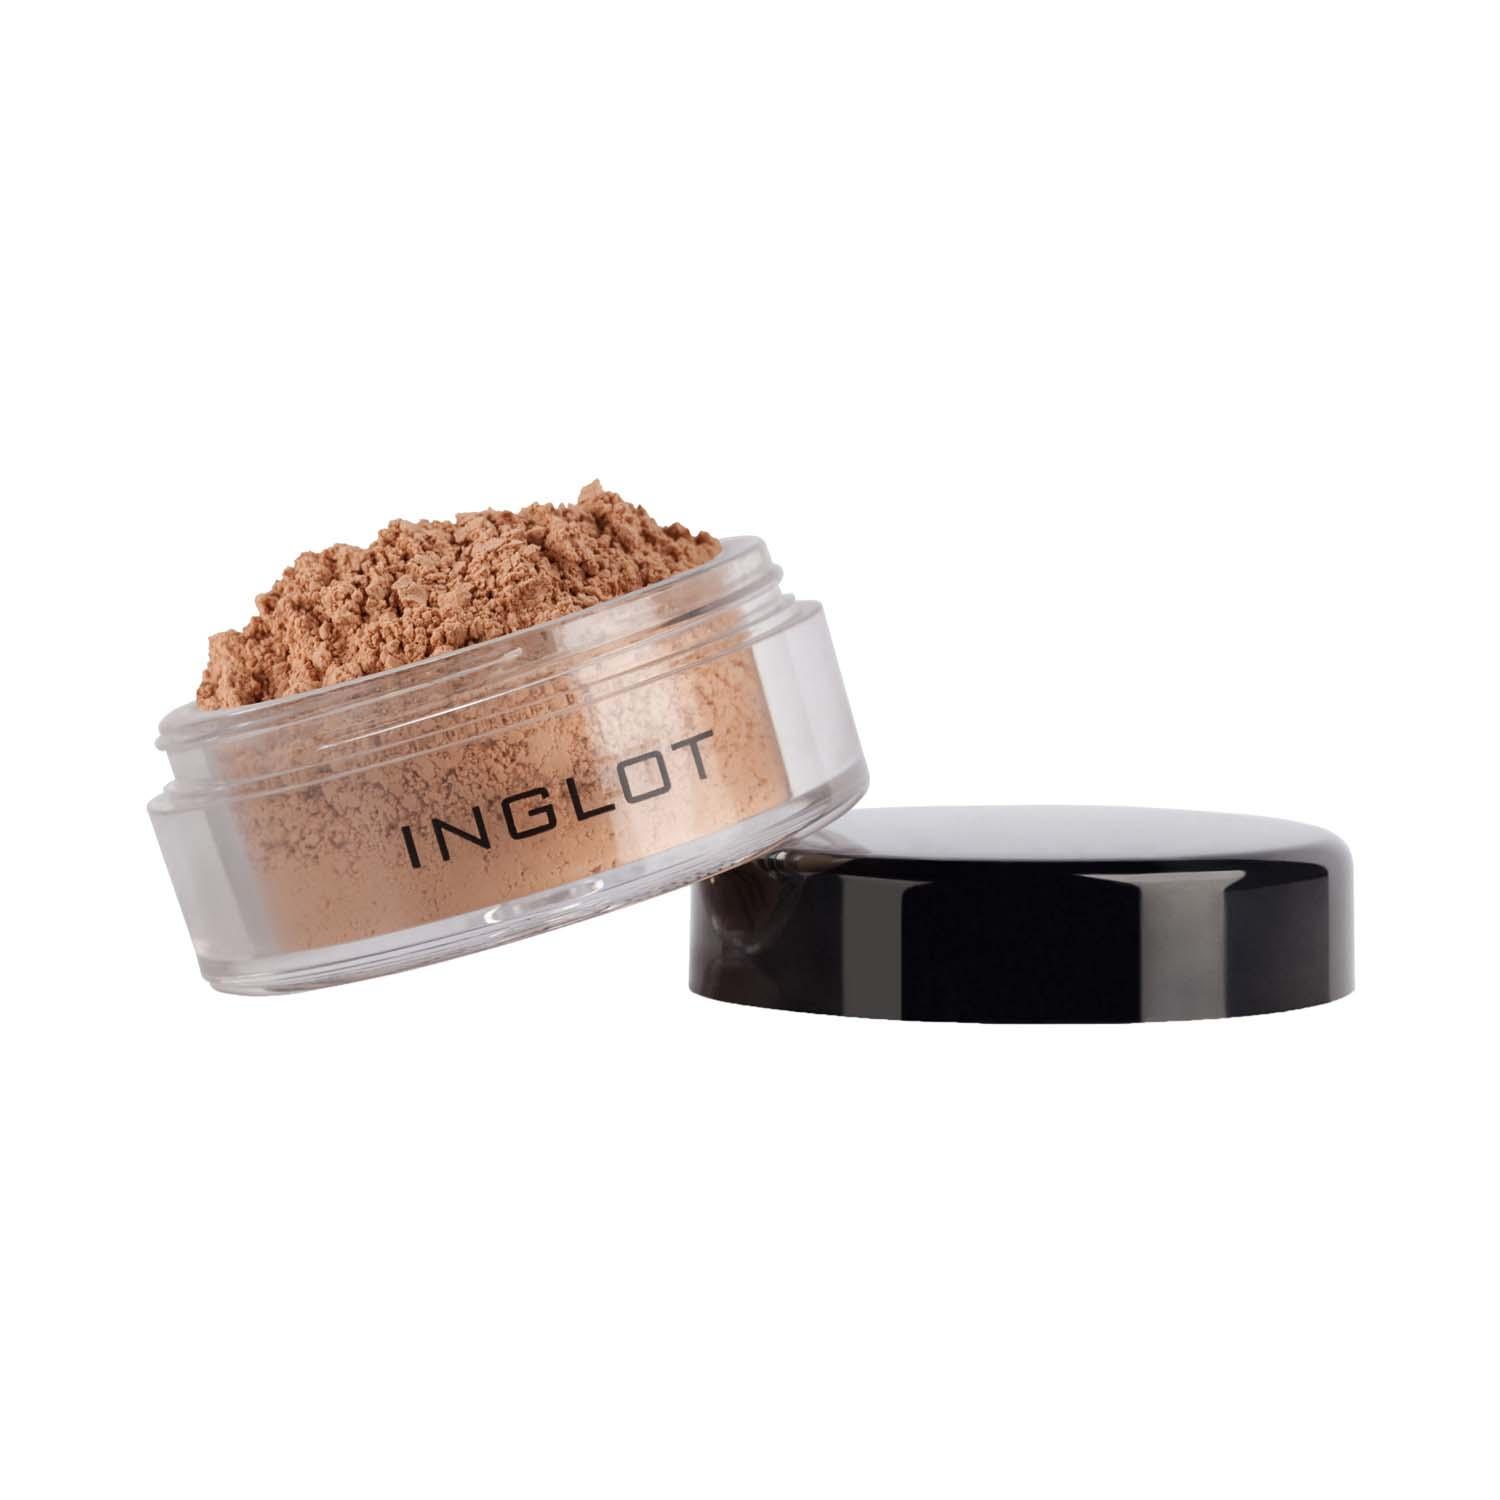 INGLOT | INGLOT Translucent Loose Setting Powder - 212 (1.5 g)